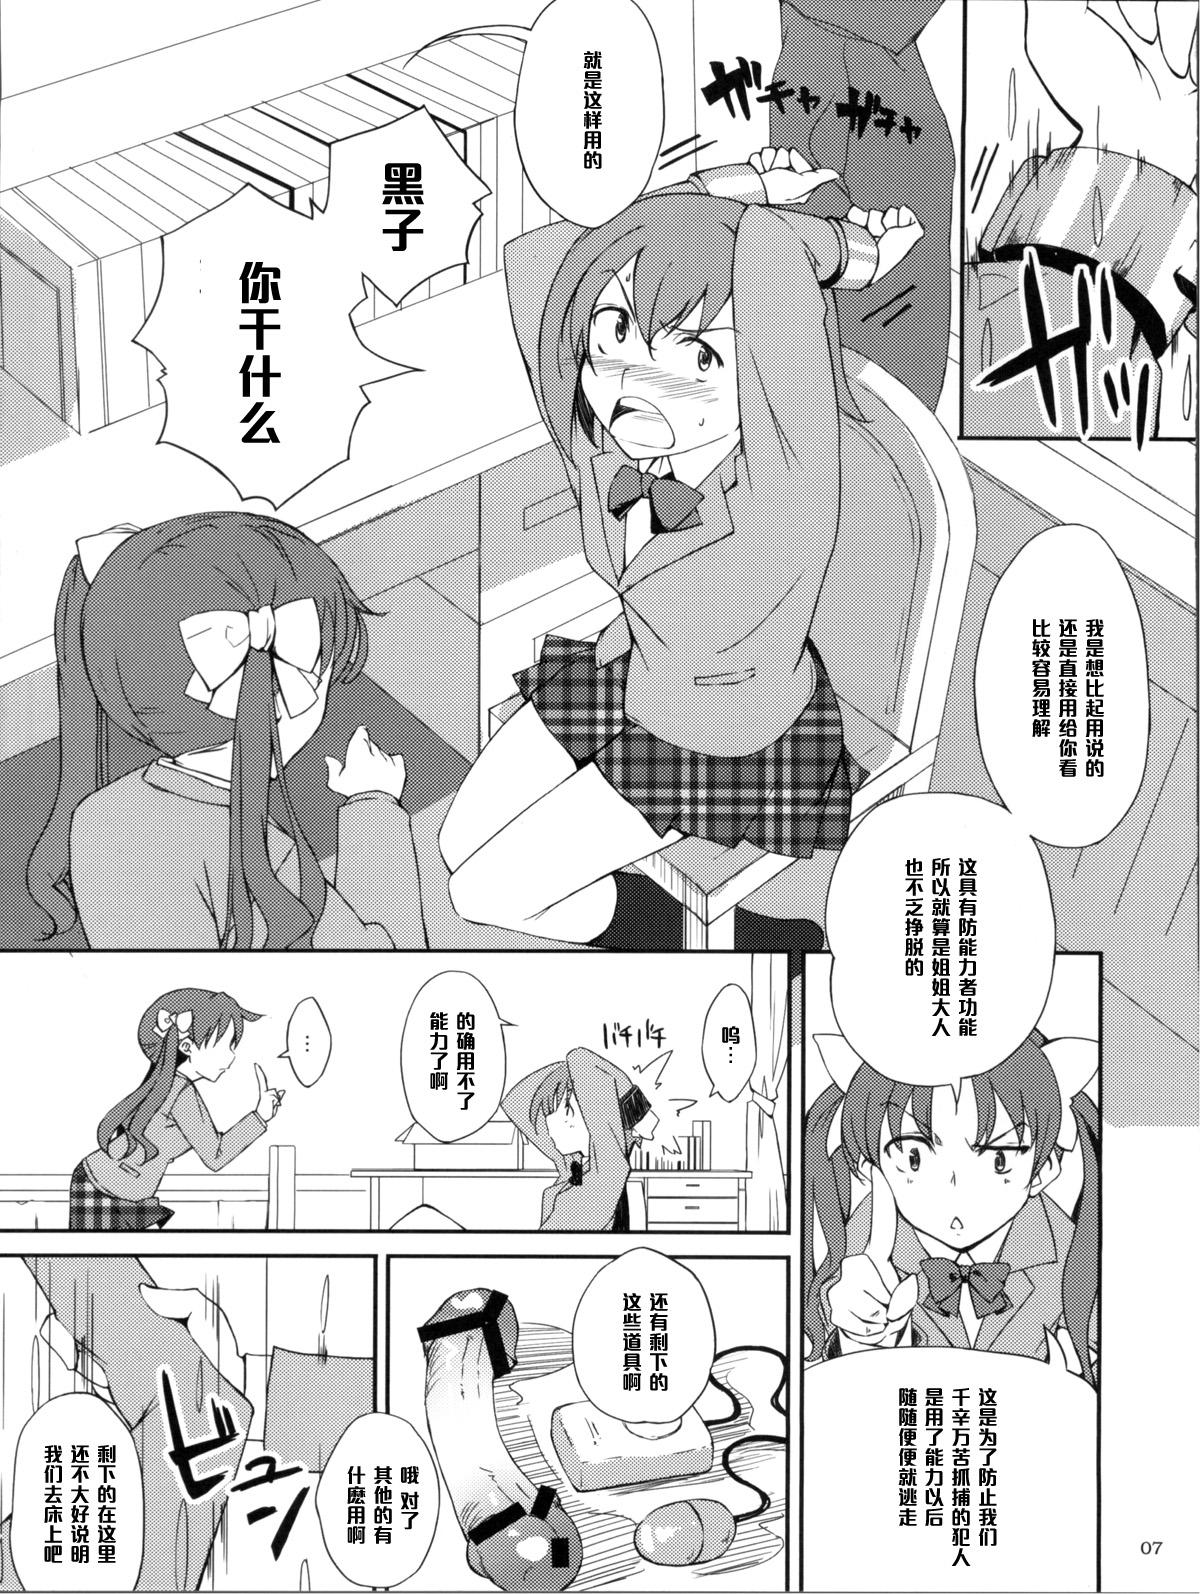 Double Penetration Desu no!! - Toaru kagaku no railgun Jerk Off Instruction - Page 7